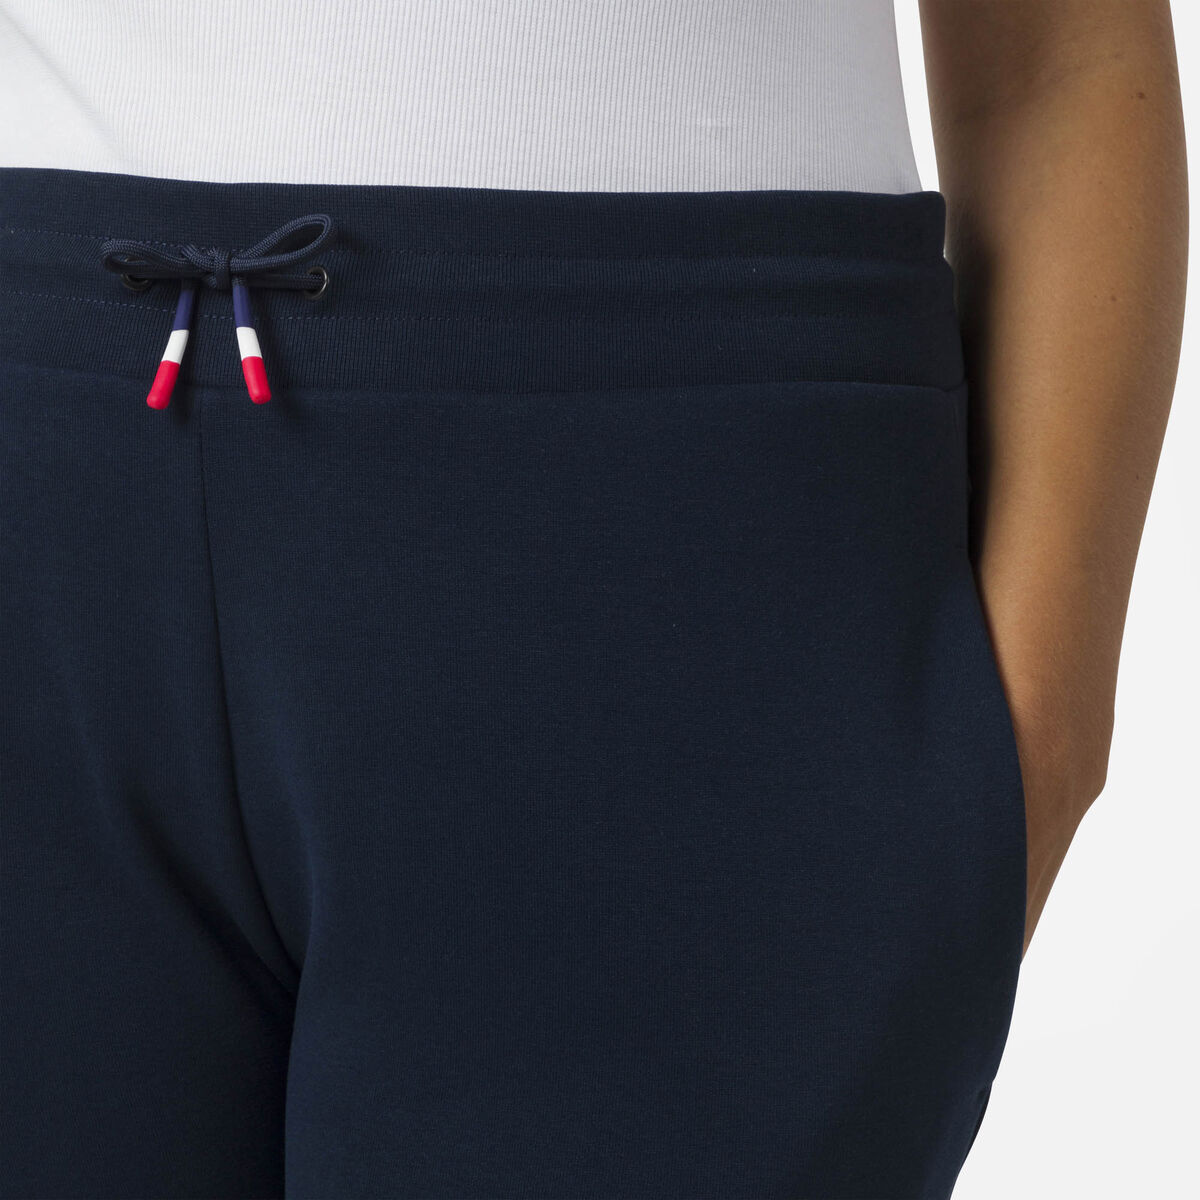 Pantalones deportivos de algodón logo para mujer